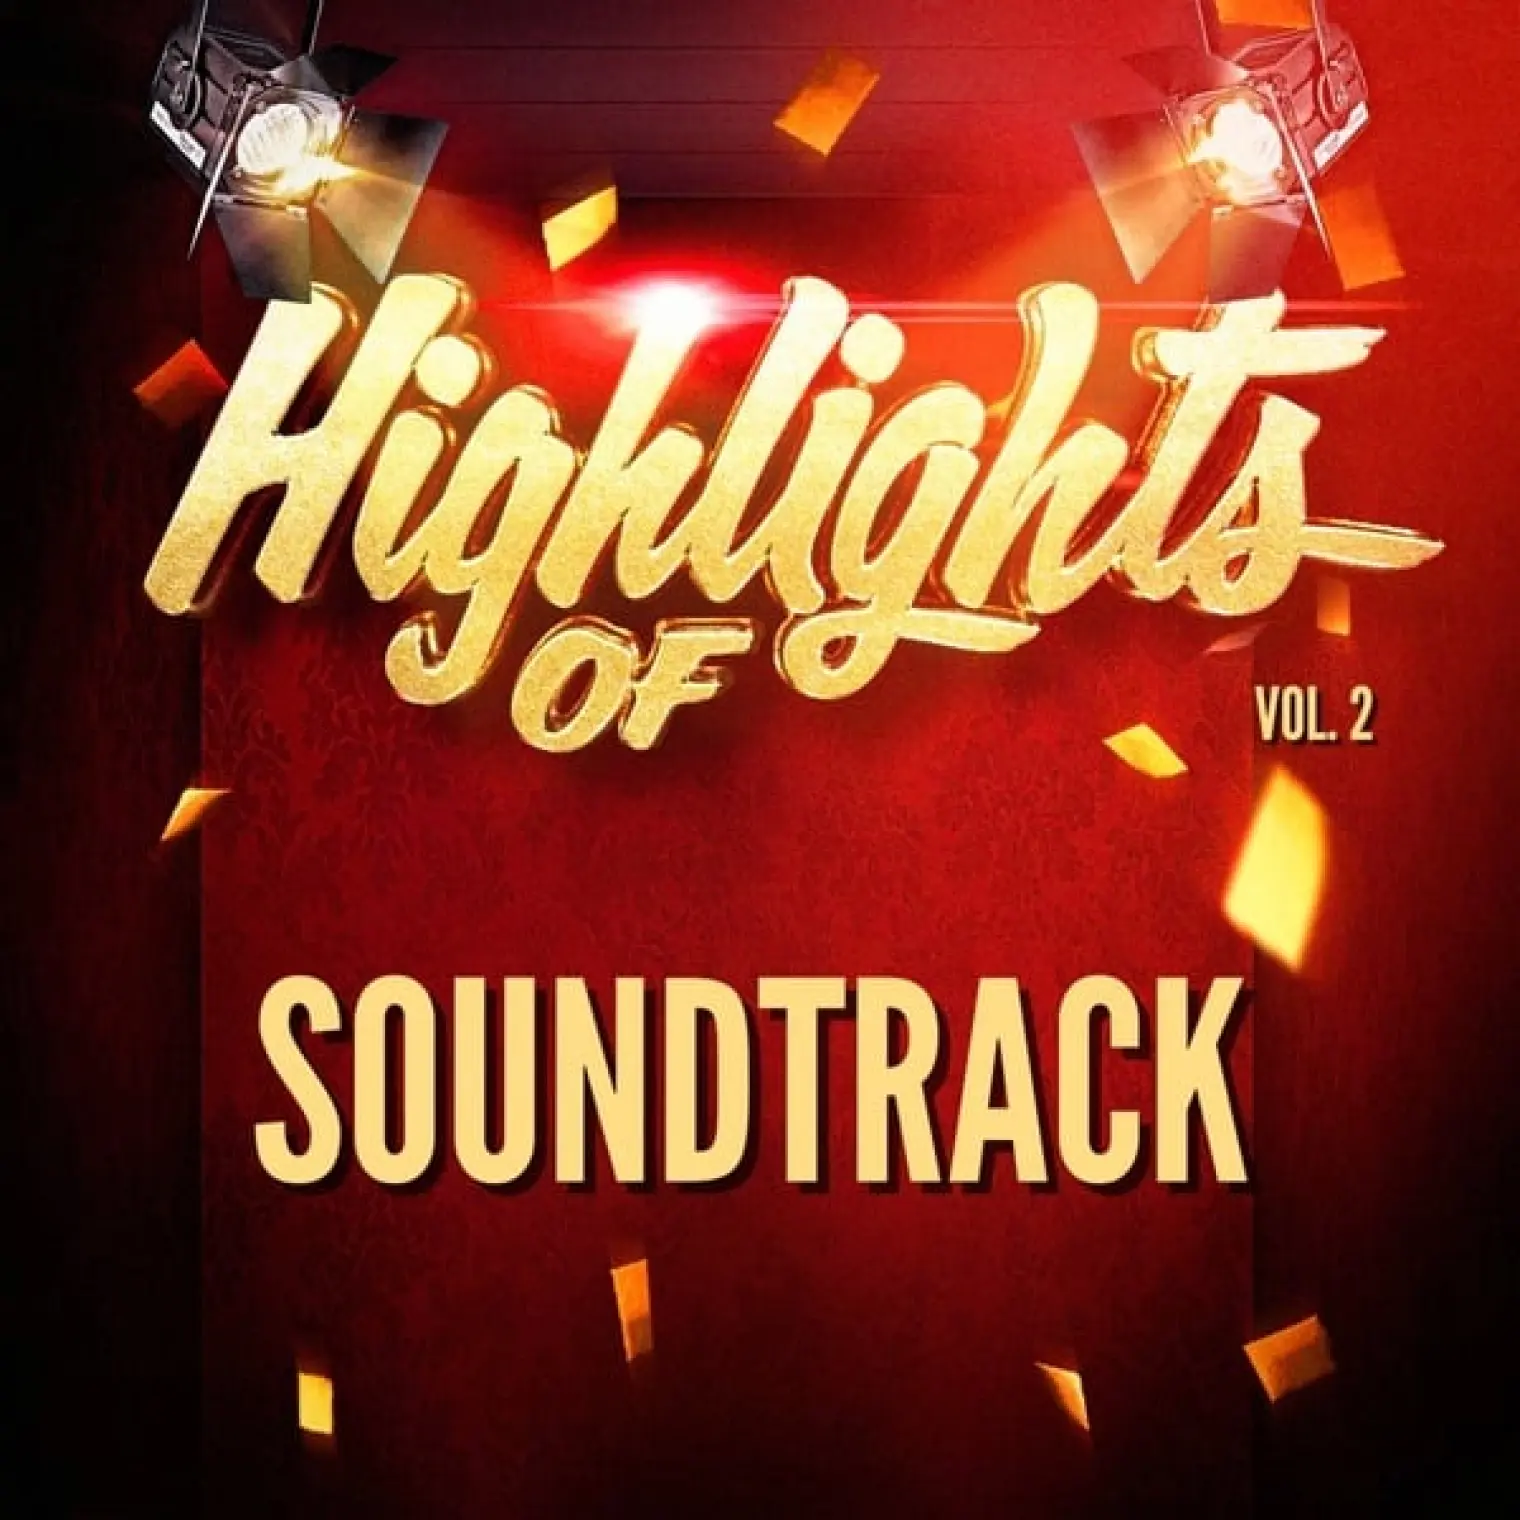 Highlights of Soundtrack, Vol. 2 -  Soundtrack 